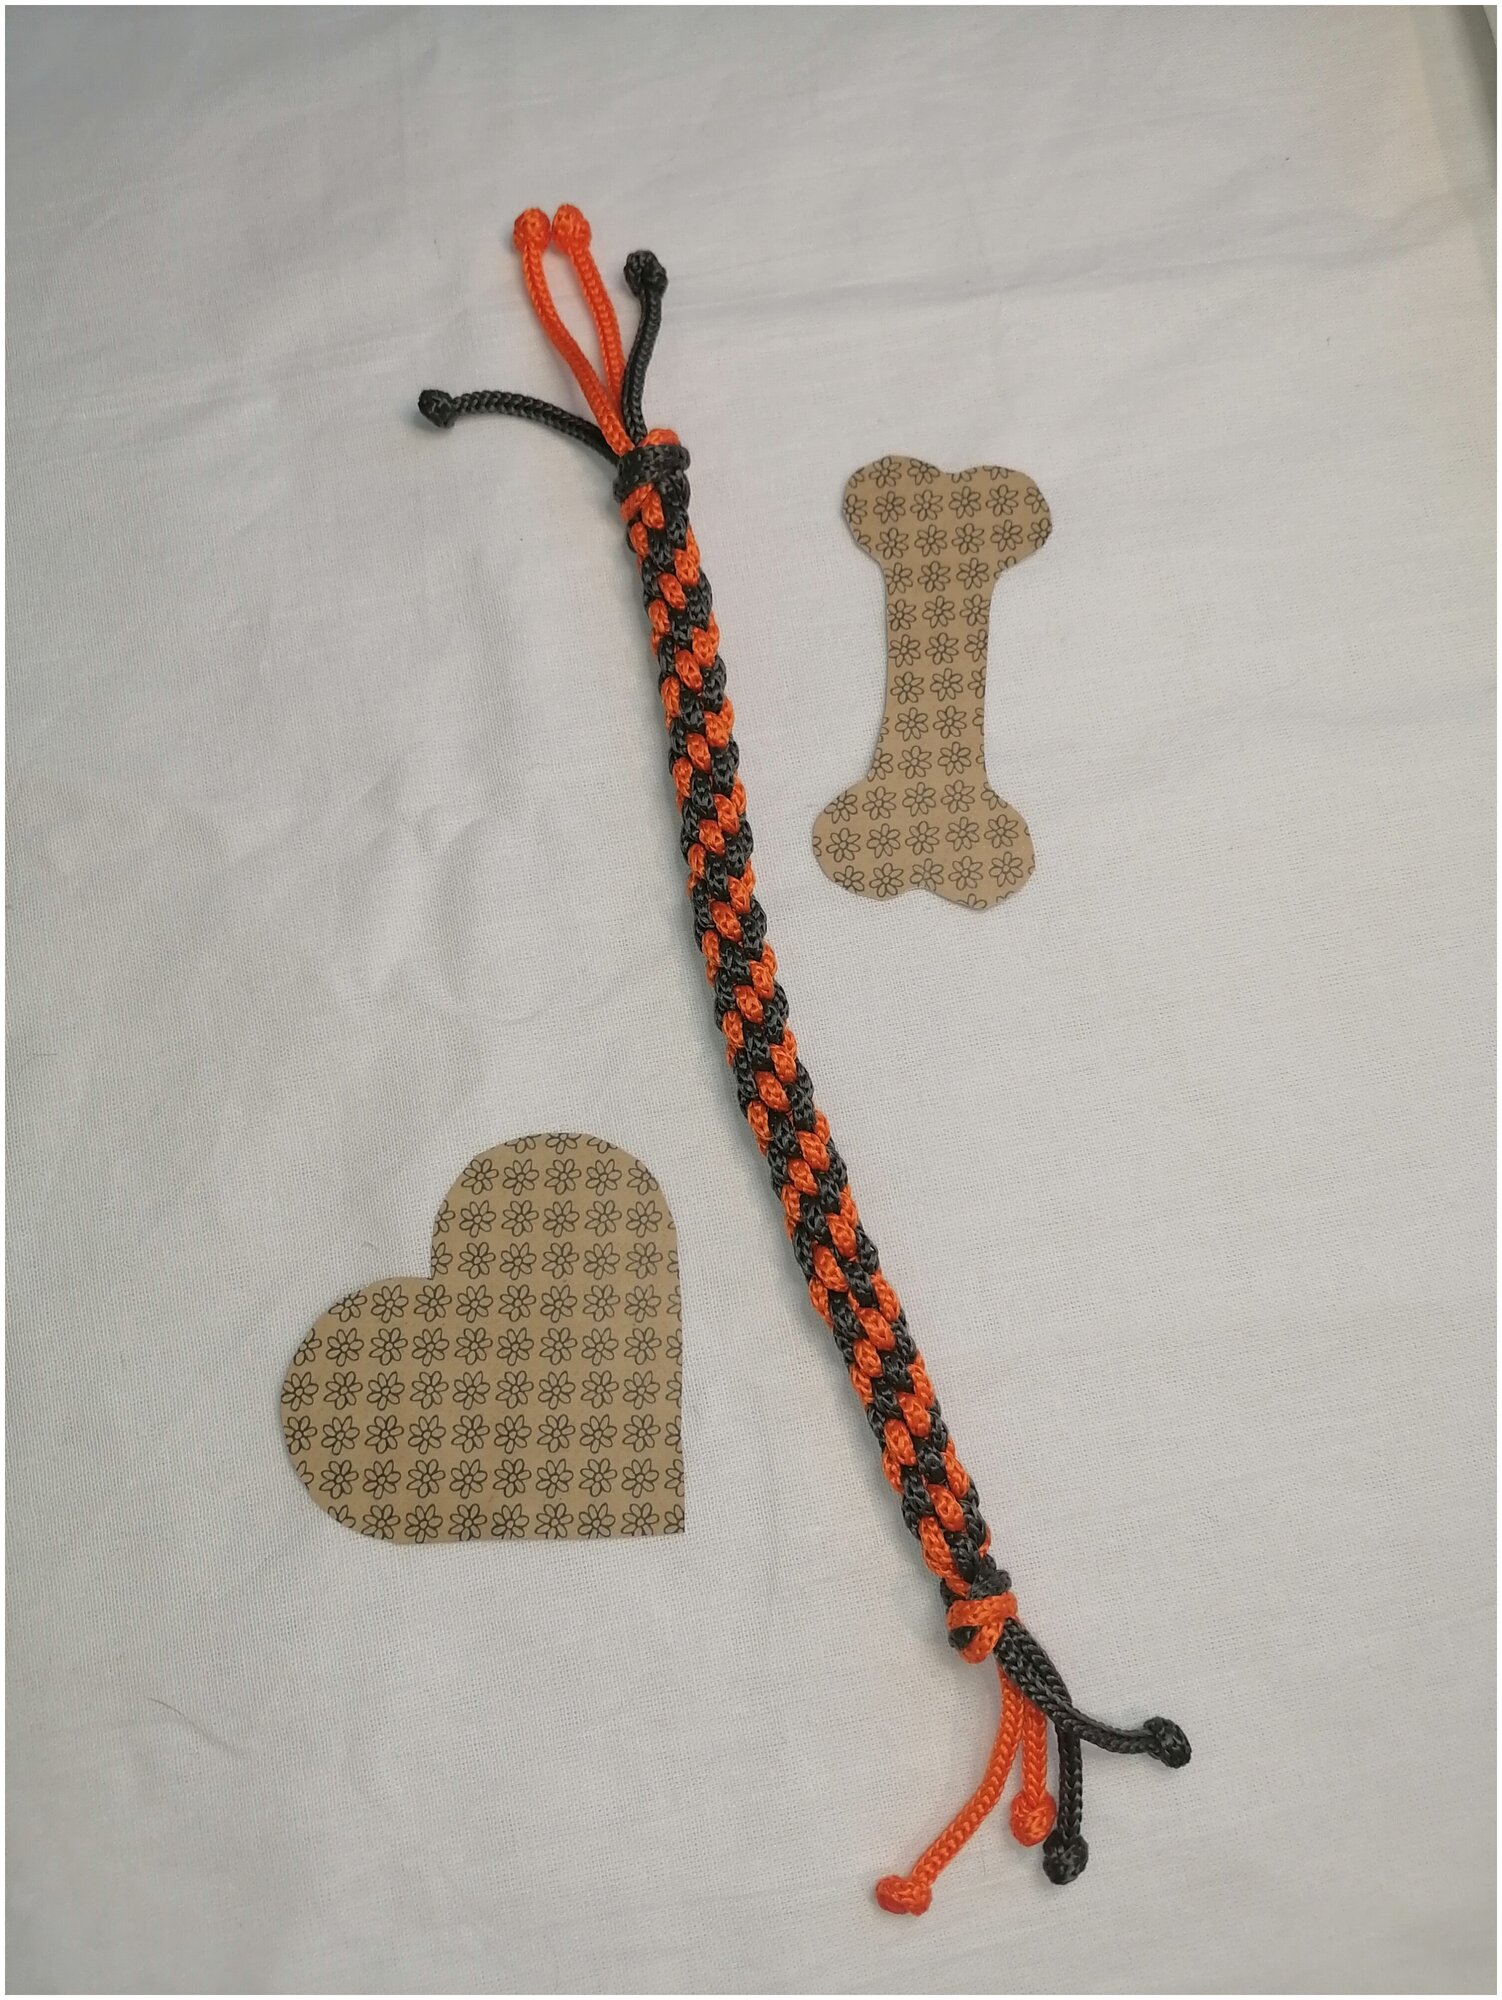 Игрушка для мелких пород собак и кошек "Канатик-Кусатик" 20 см. серо-оранжевый